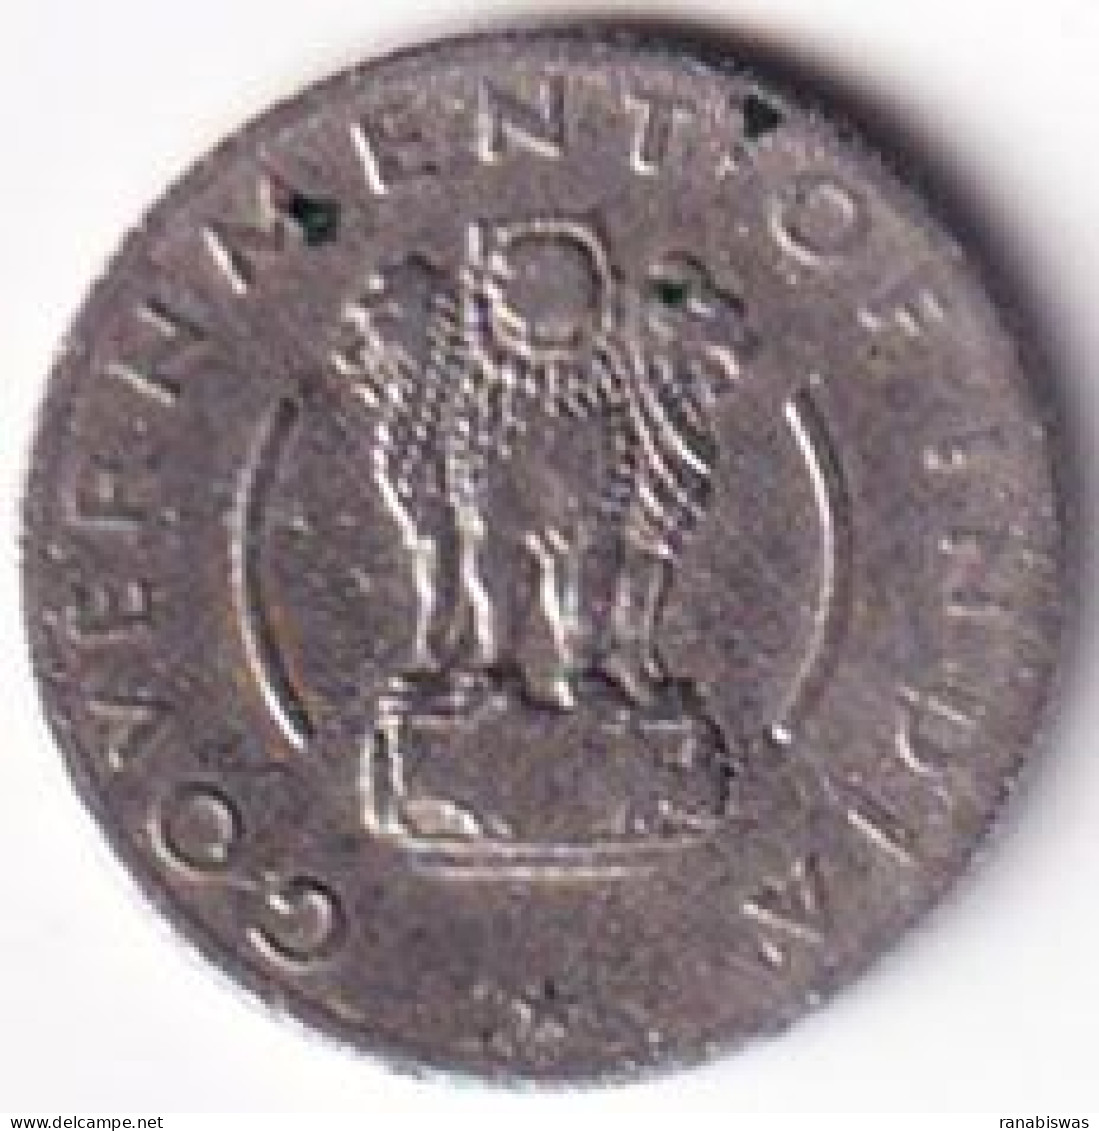 INDIA COIN LOT 287, 1/4 RUPEE 1956, CALCUTTA MINT, XF - Inde